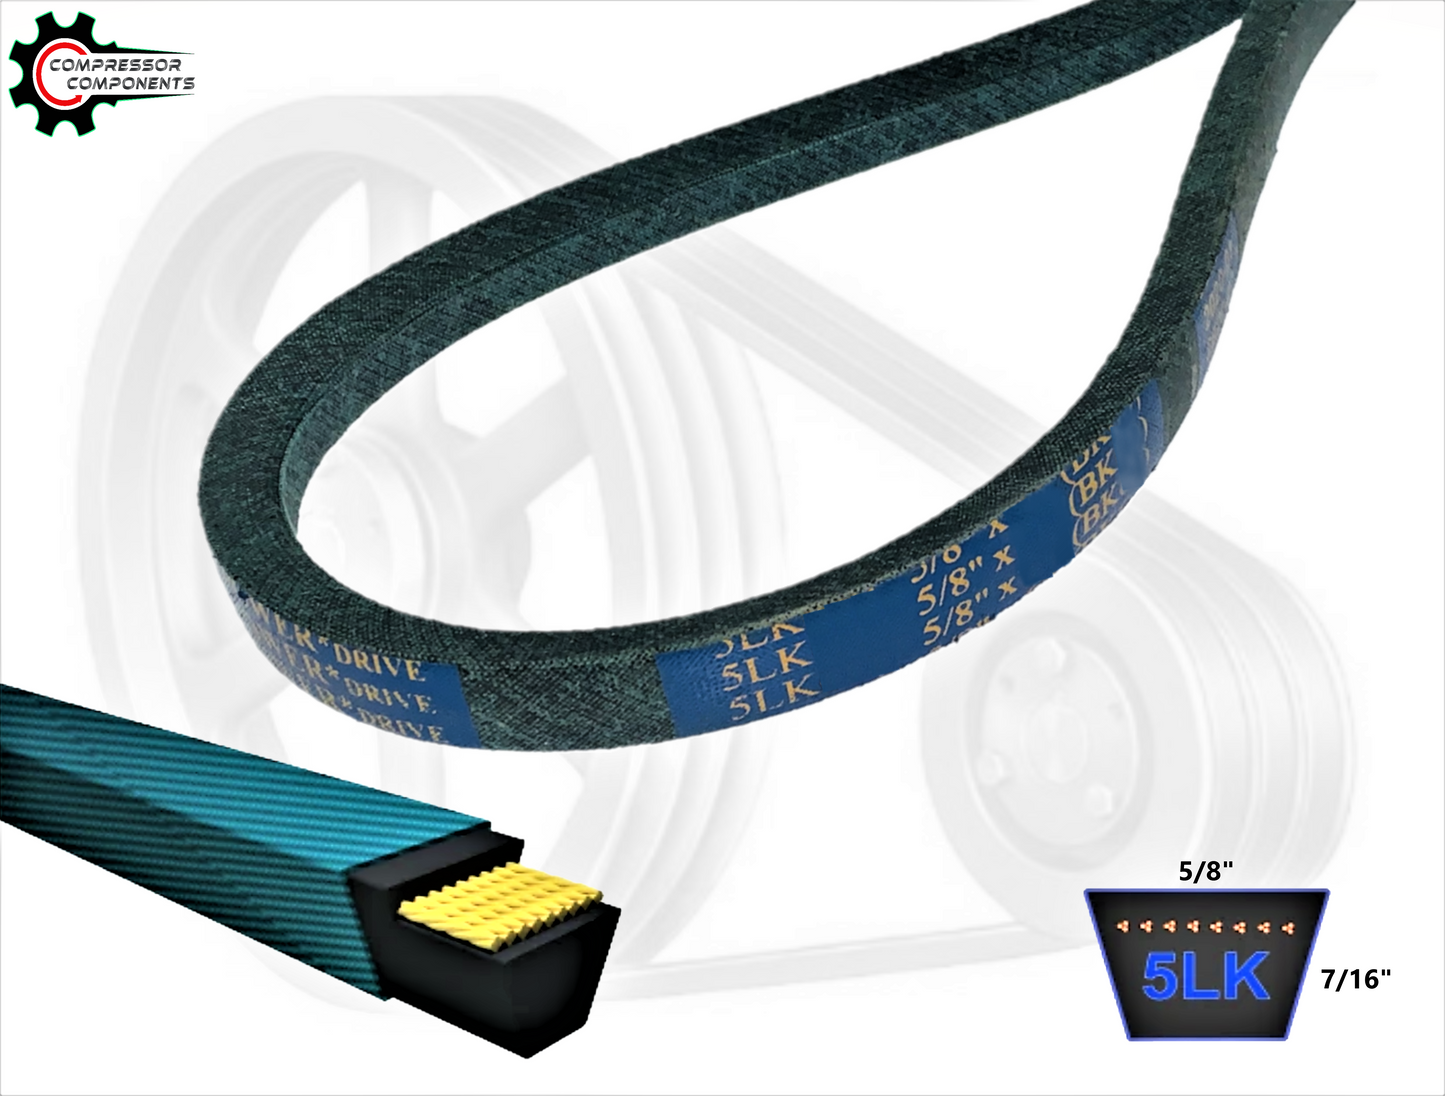 B37K / 5LK400 - D&D Dura-Ultimate Kevlar Reinforced V-Belt